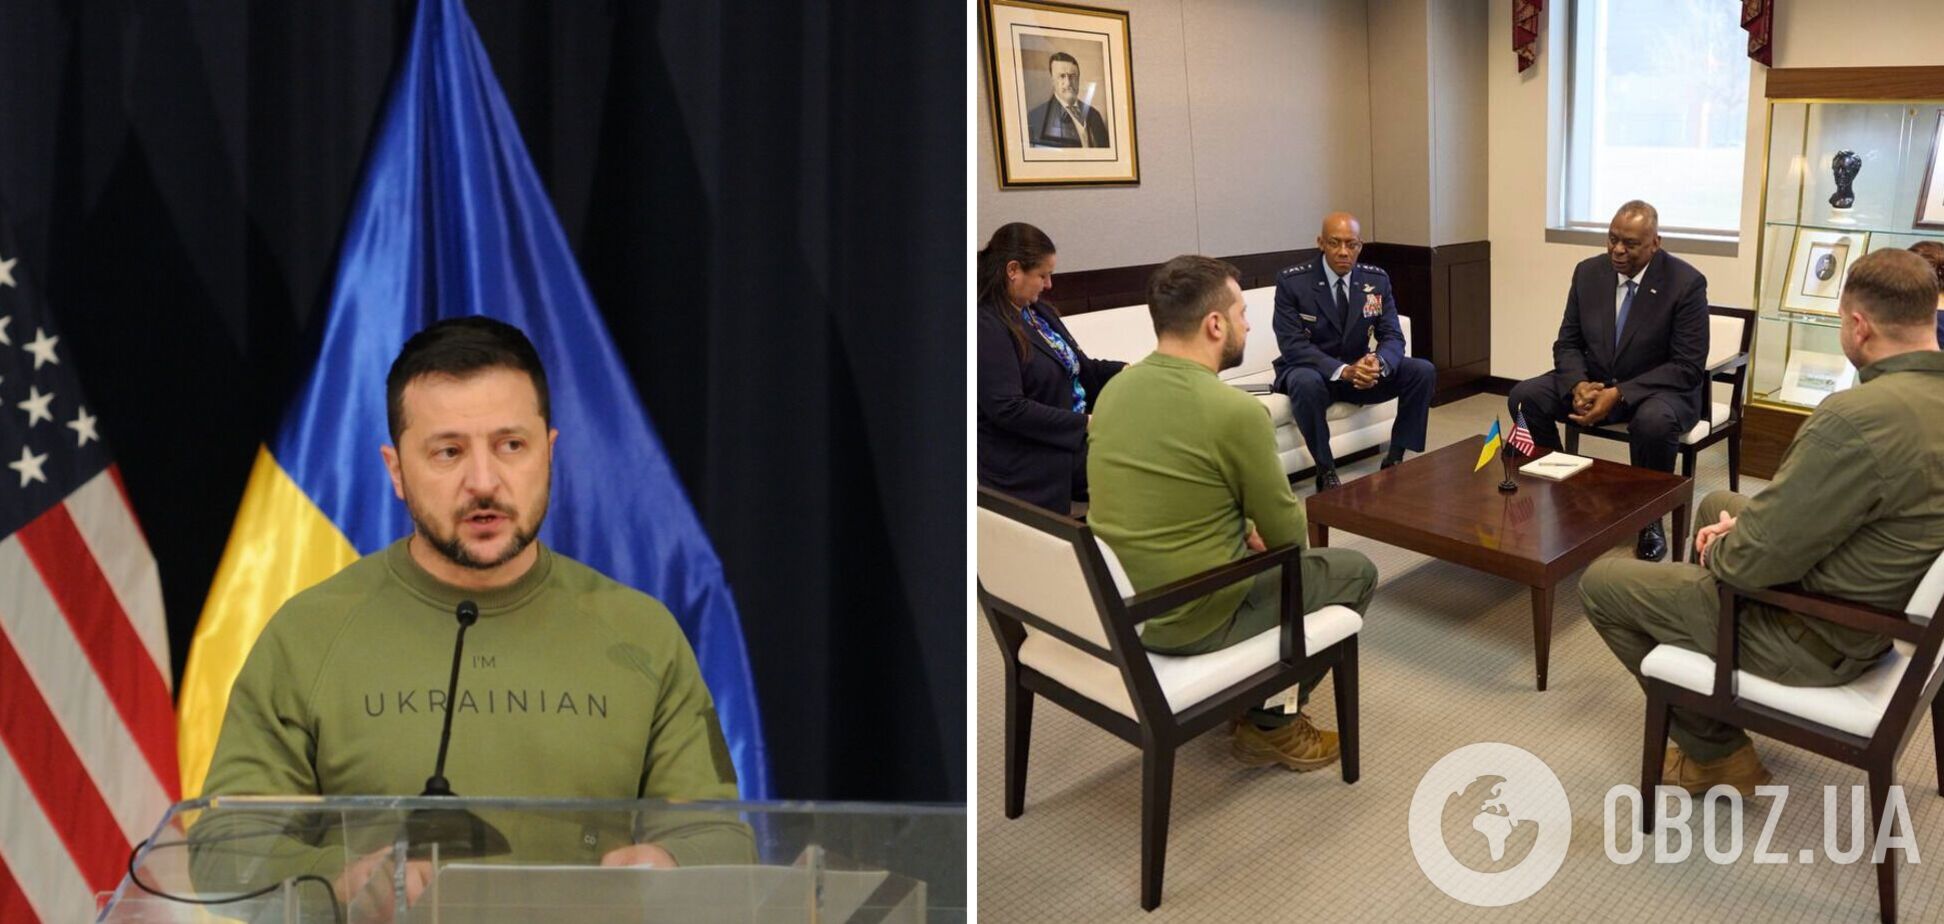 Зеленский начал визит в США со встречи с руководством Пентагона и военной элитой. Фото